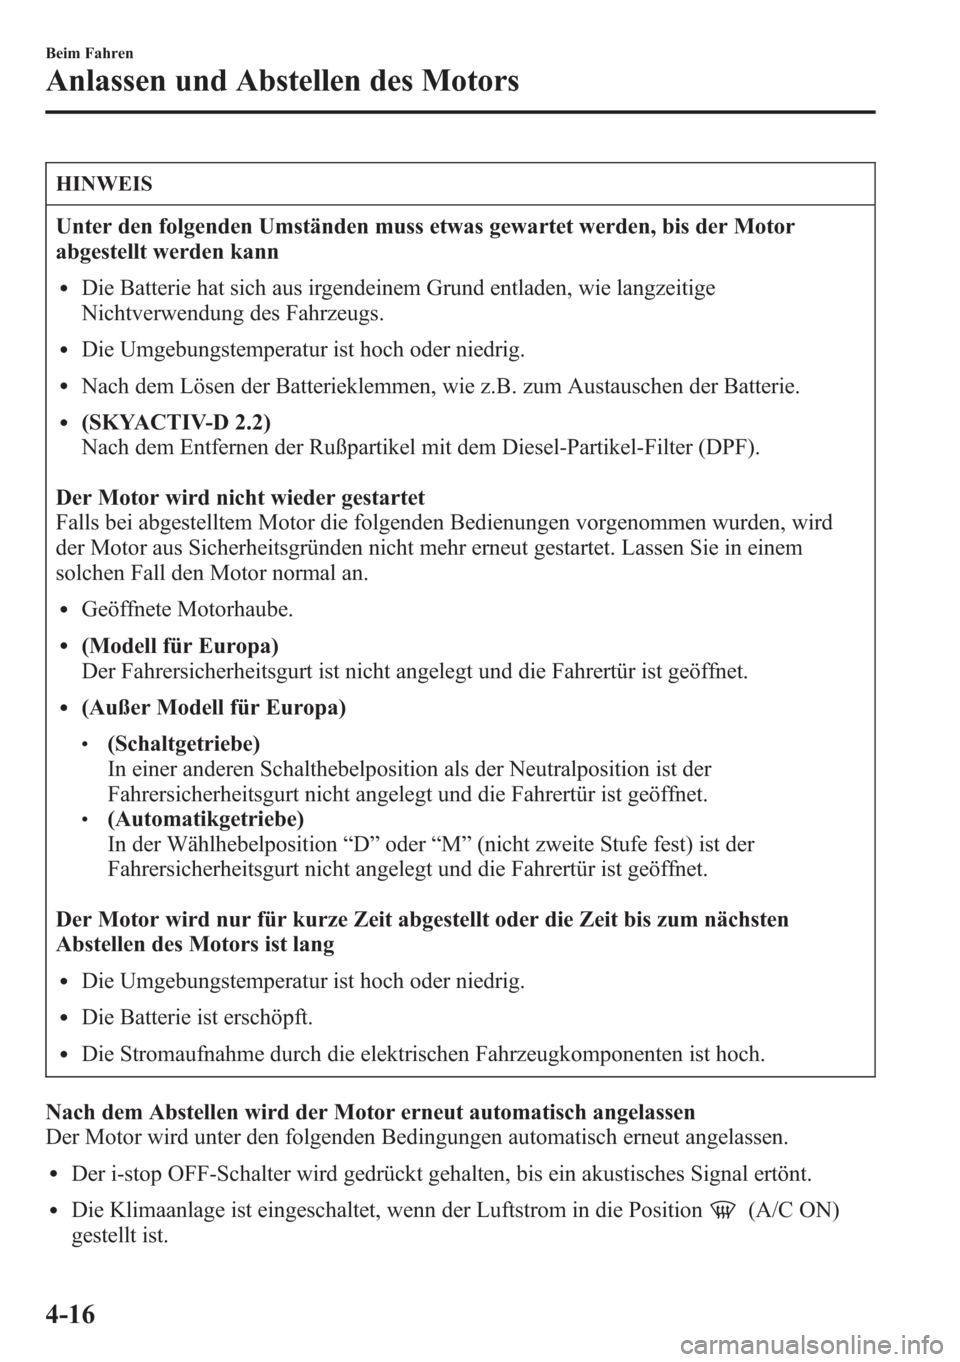 MAZDA MODEL 6 2015  Betriebsanleitung (in German) HINWEIS
Unter den folgenden Umständen muss etwas gewartet werden, bis der Motor
abgestellt werden kann
lDie Batterie hat sich aus irgendeinem Grund entladen, wie langzeitige
Nichtverwendung des Fahrz